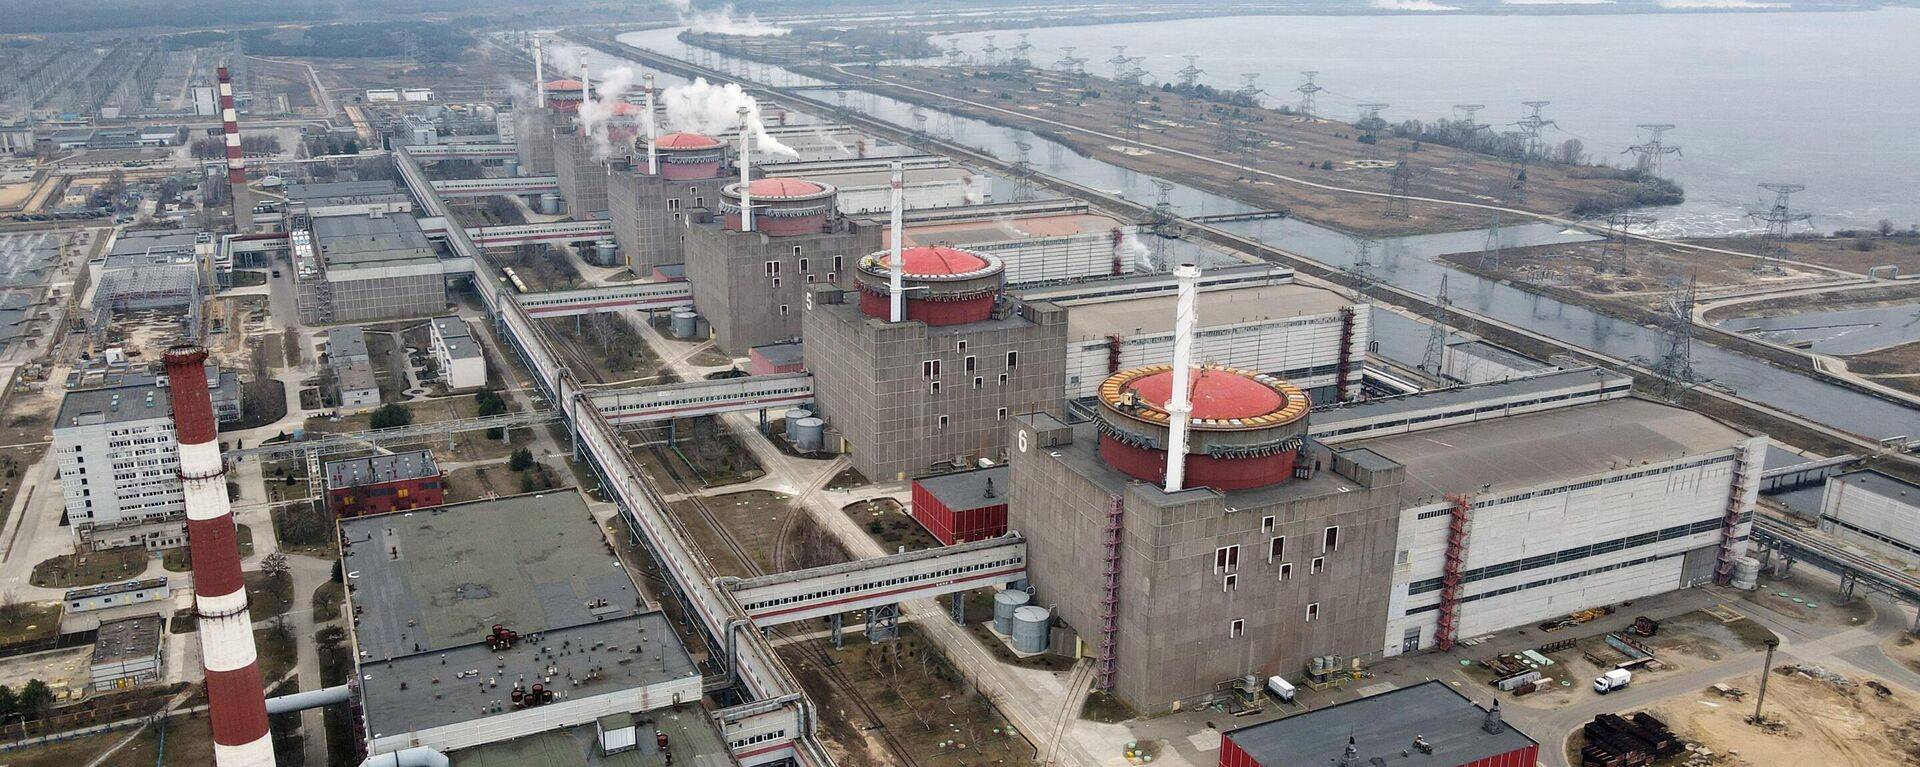 La planta nuclear de Zaporiyia - Sputnik Mundo, 1920, 18.08.2022